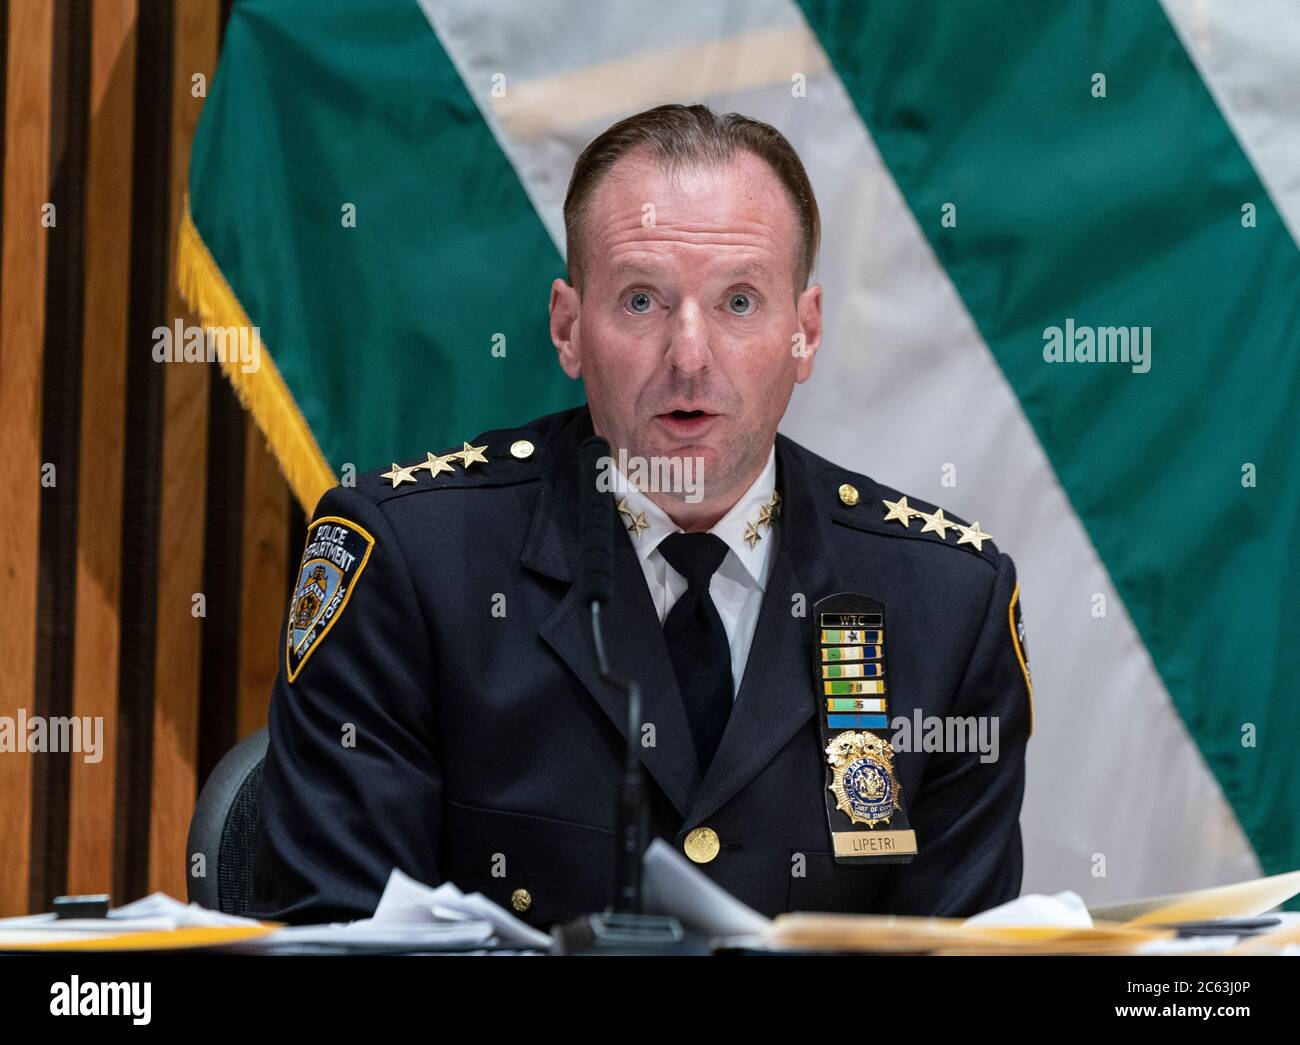 Nueva York, NY - 6 de julio de 2020: El Jefe de estrategias de Control de delitos Mike LiPetri habla durante la conferencia de prensa en una plaza de la Policía Foto de stock